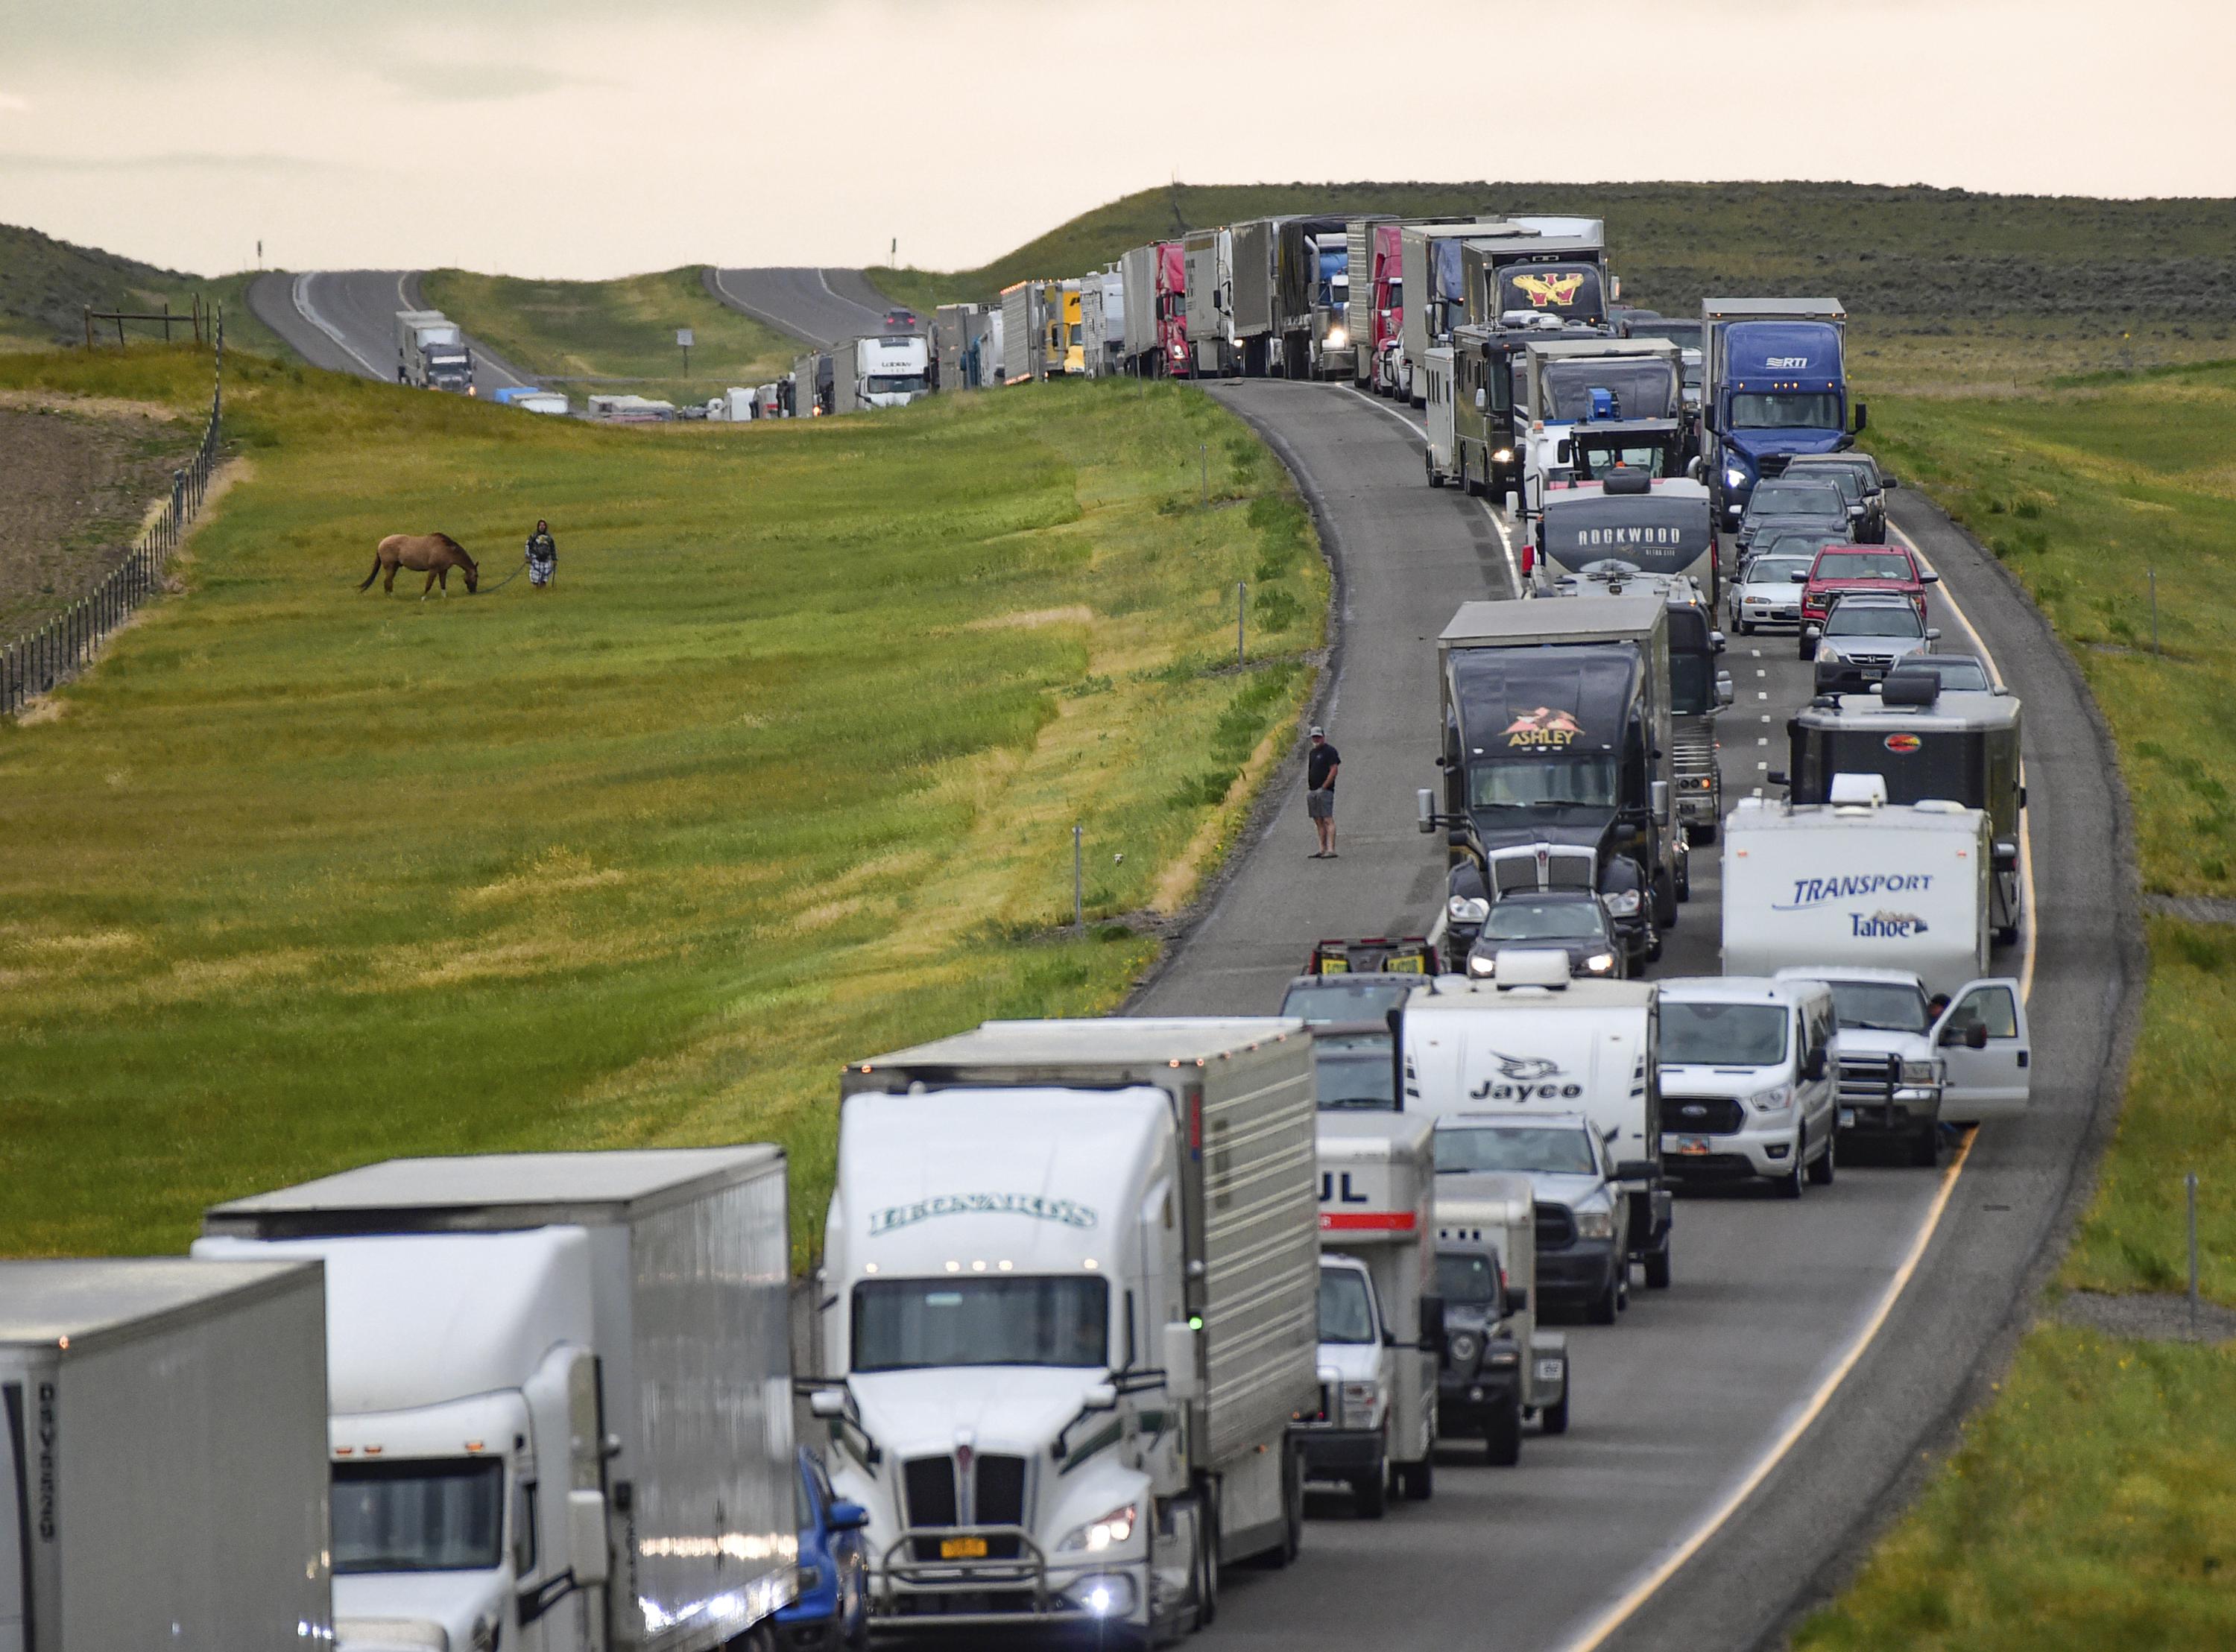 6 people die after storm causes Montana highway pileup